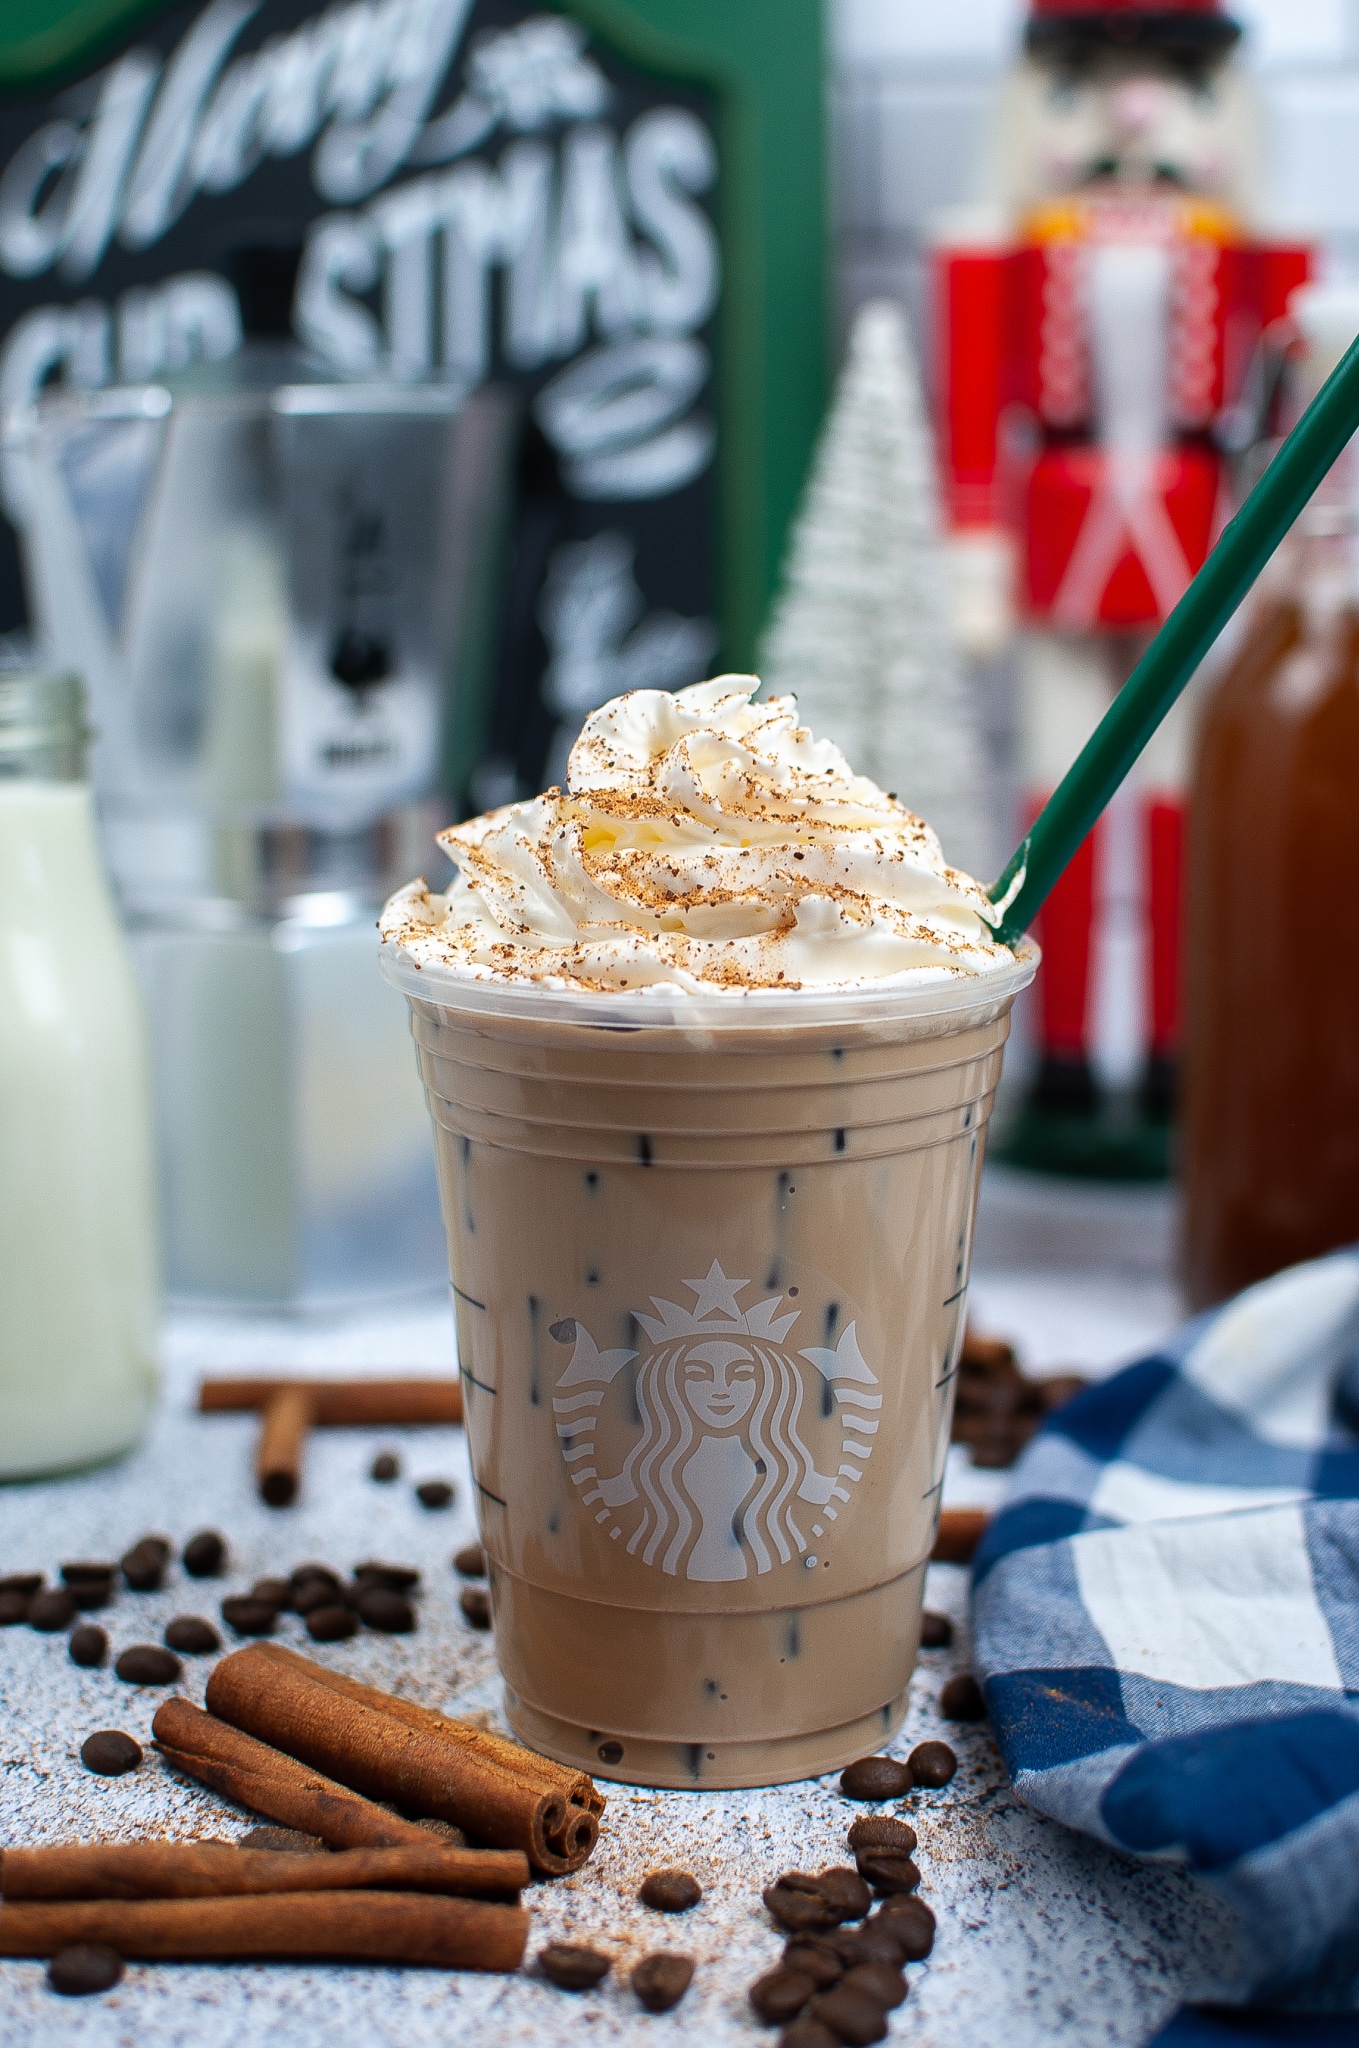 https://mommakesdinner.com/wp-content/uploads/2021/11/Starbucks-iced-gingerbread-latte-recipe-5.jpg